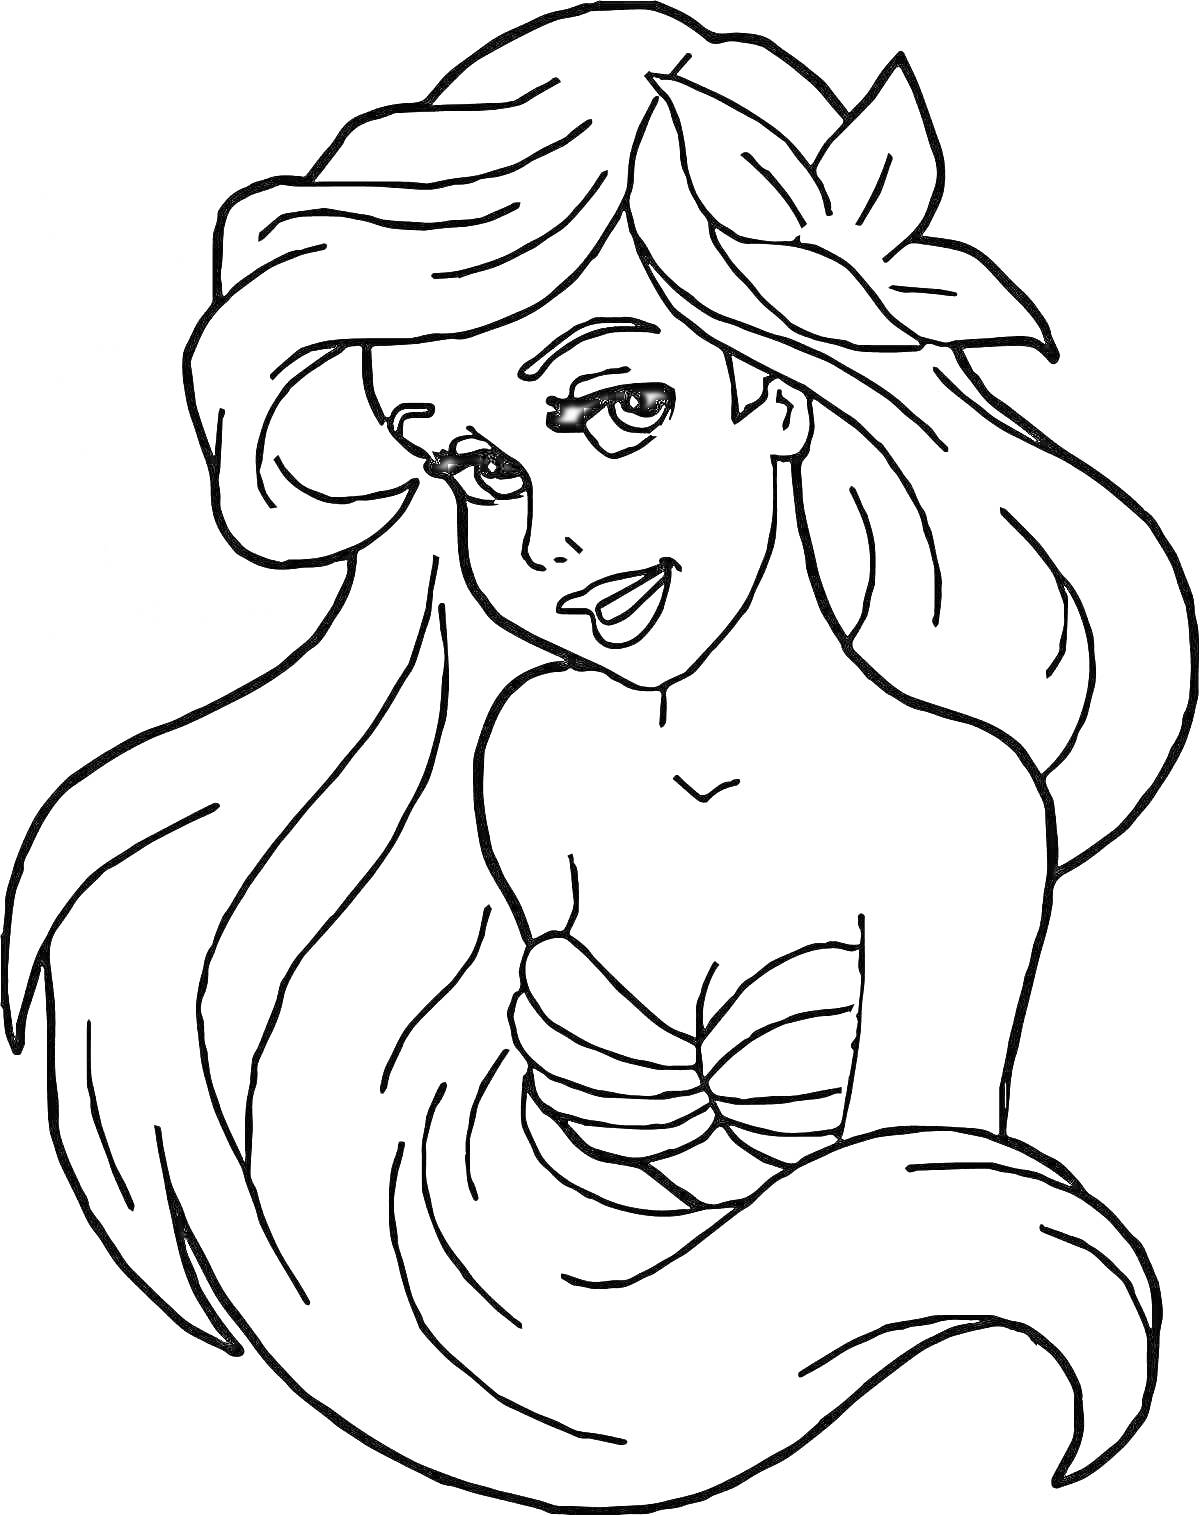 РаскраскаРусалка Ариэль с длинными волосами и цветком в волосах